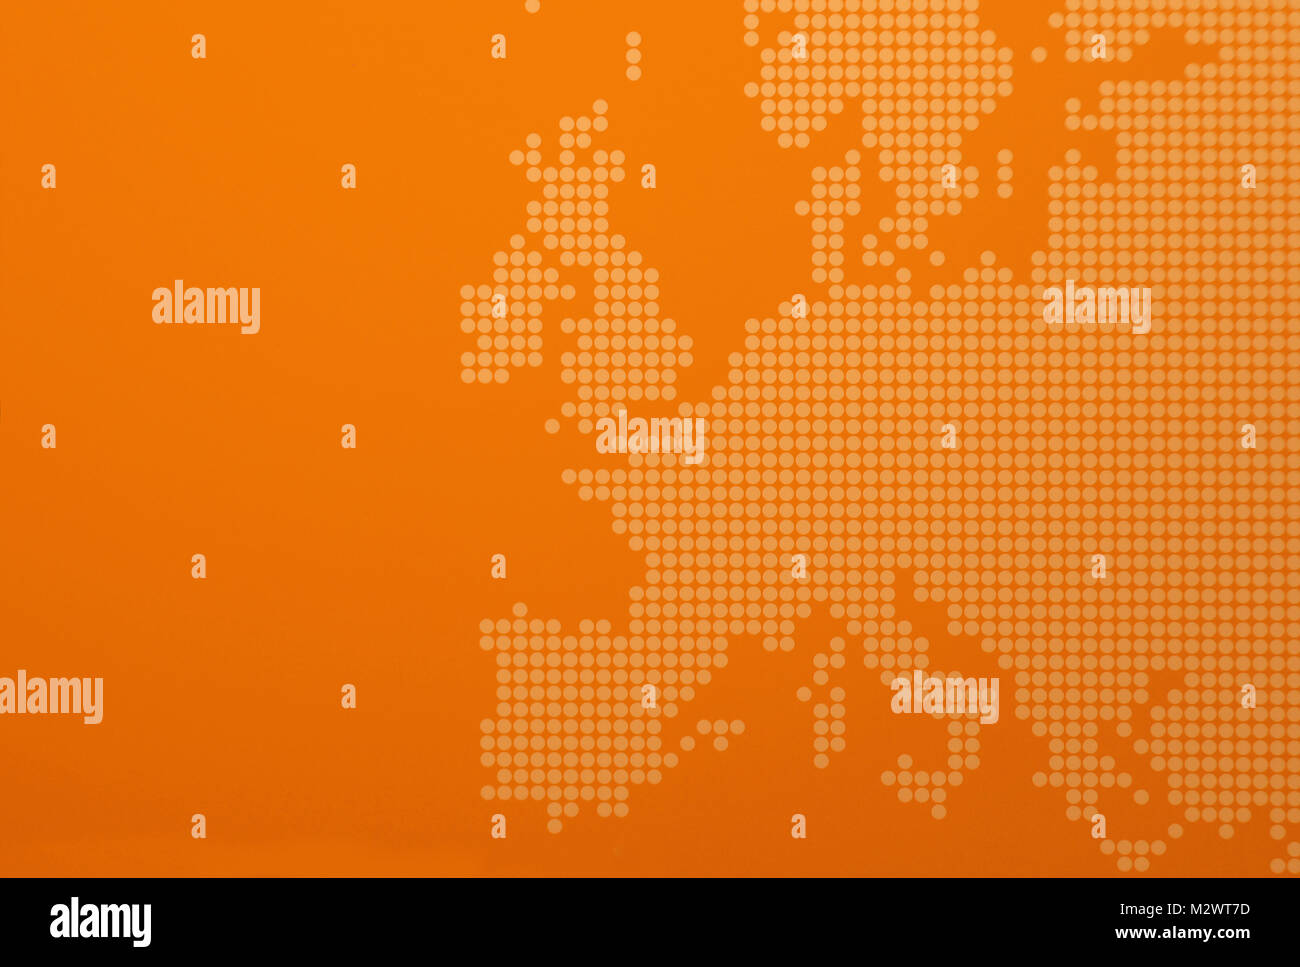 Rappresentazione grafica di Europa - stilizzazione di una mappa europea arancione Foto Stock